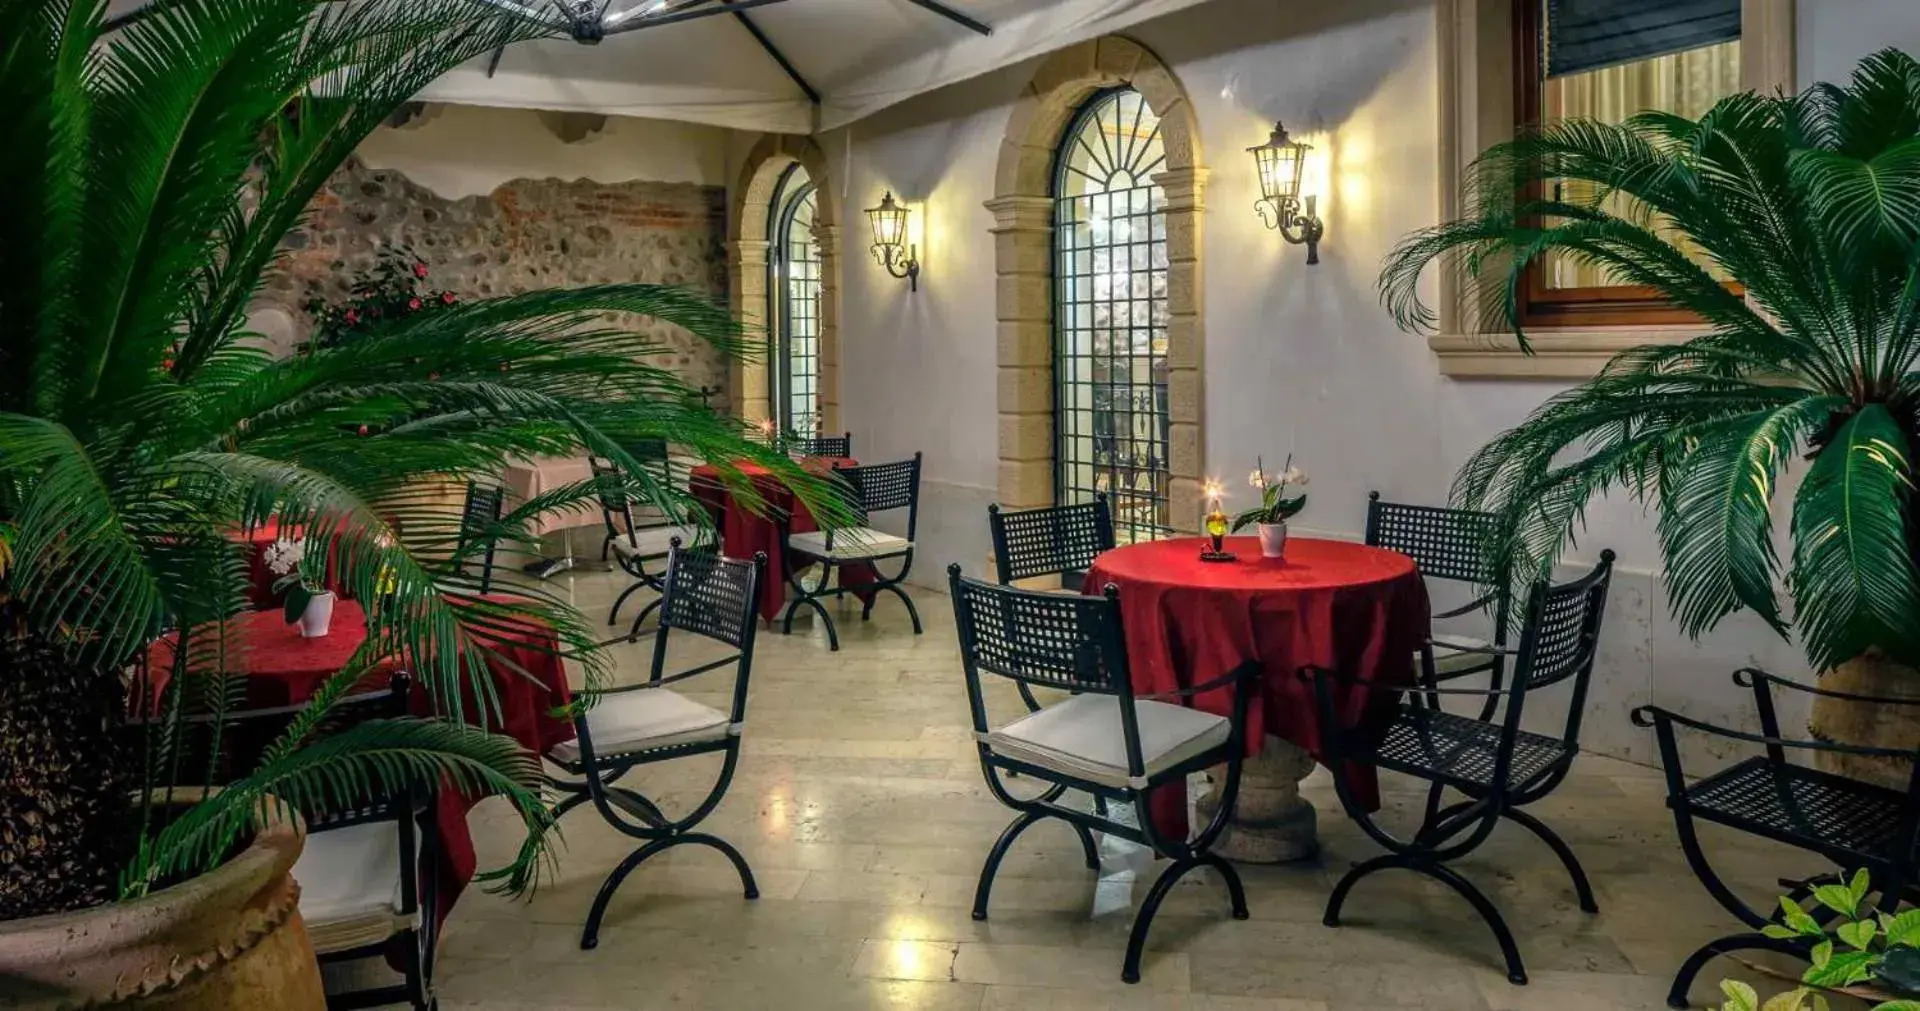 Garden, Restaurant/Places to Eat in Aparthotel ANTICO SAN ZENO centro storico